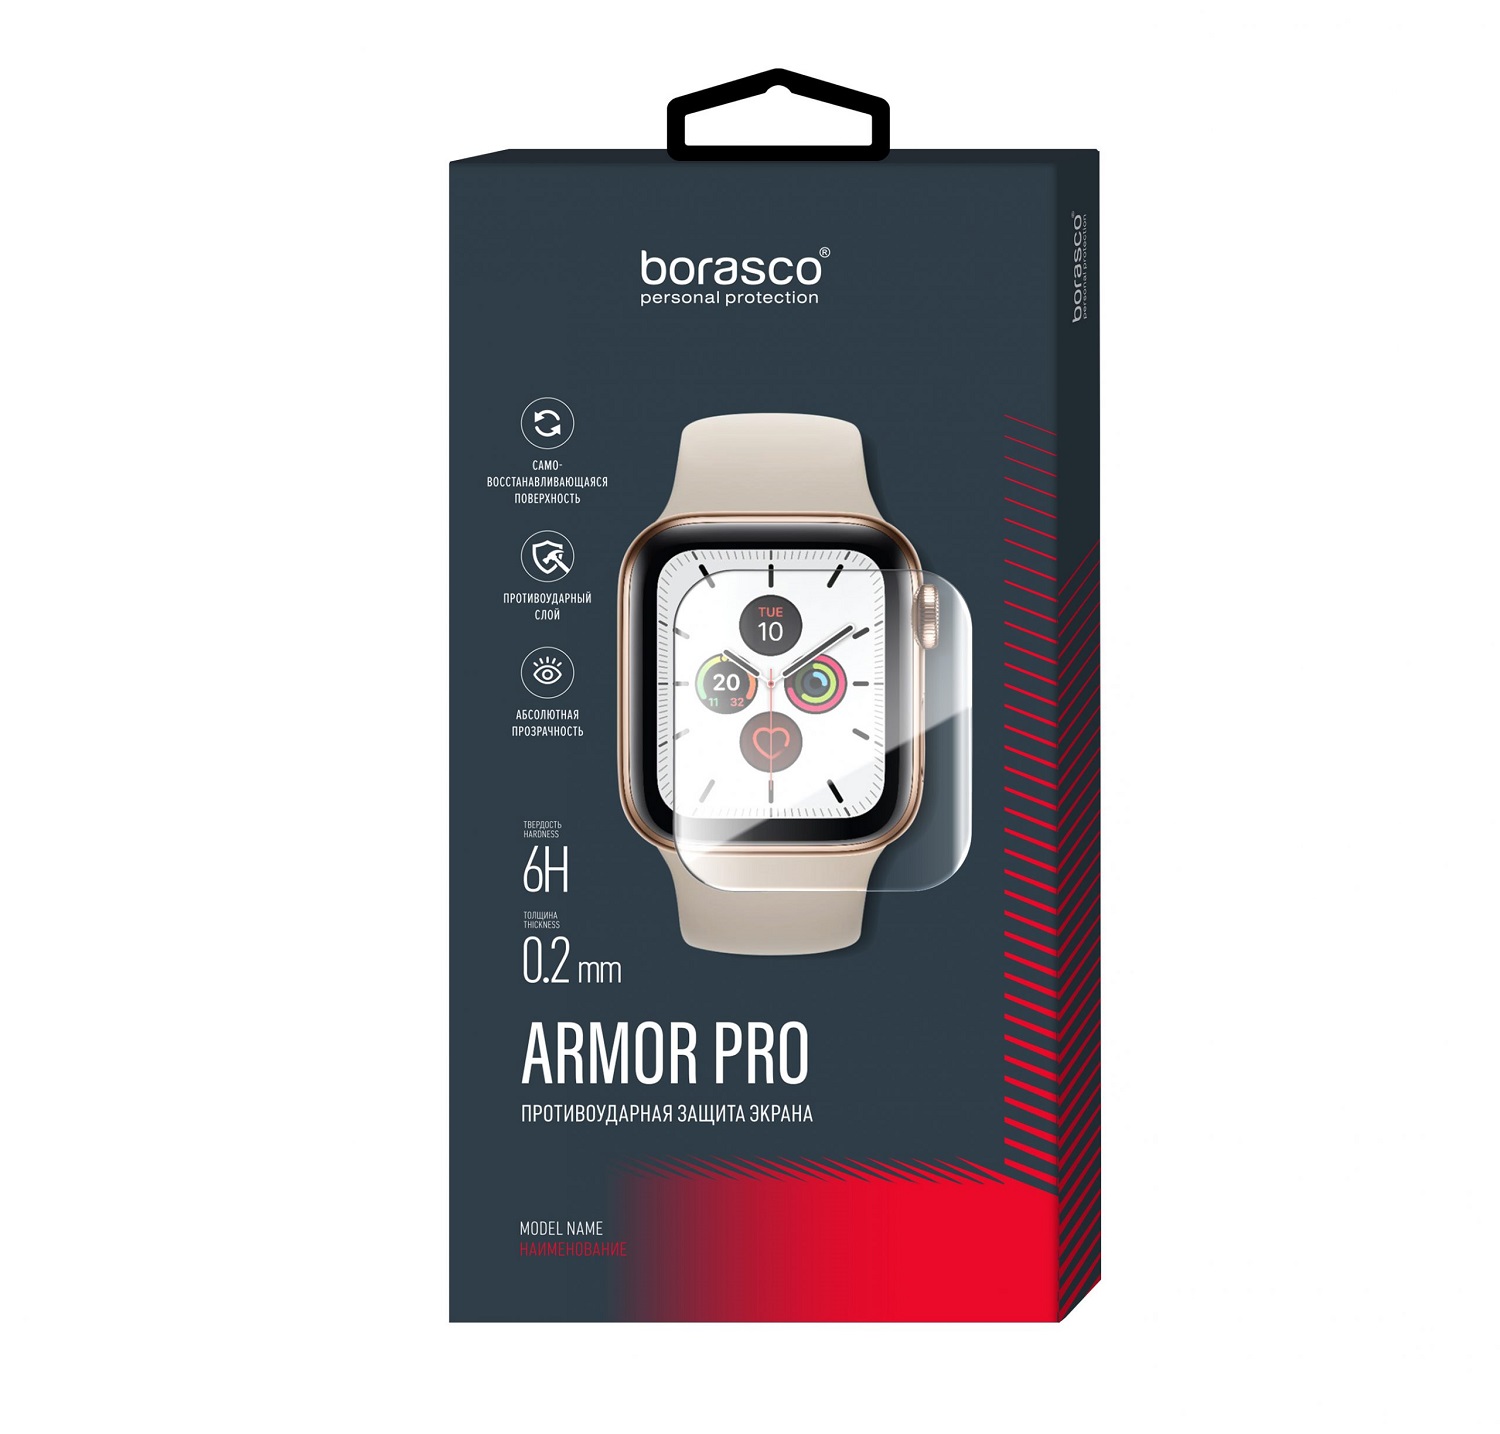 Защита экрана BoraSCO Armor Pro для Xiaomi Mi Watch защита экрана borasco armor pro для honor watch se